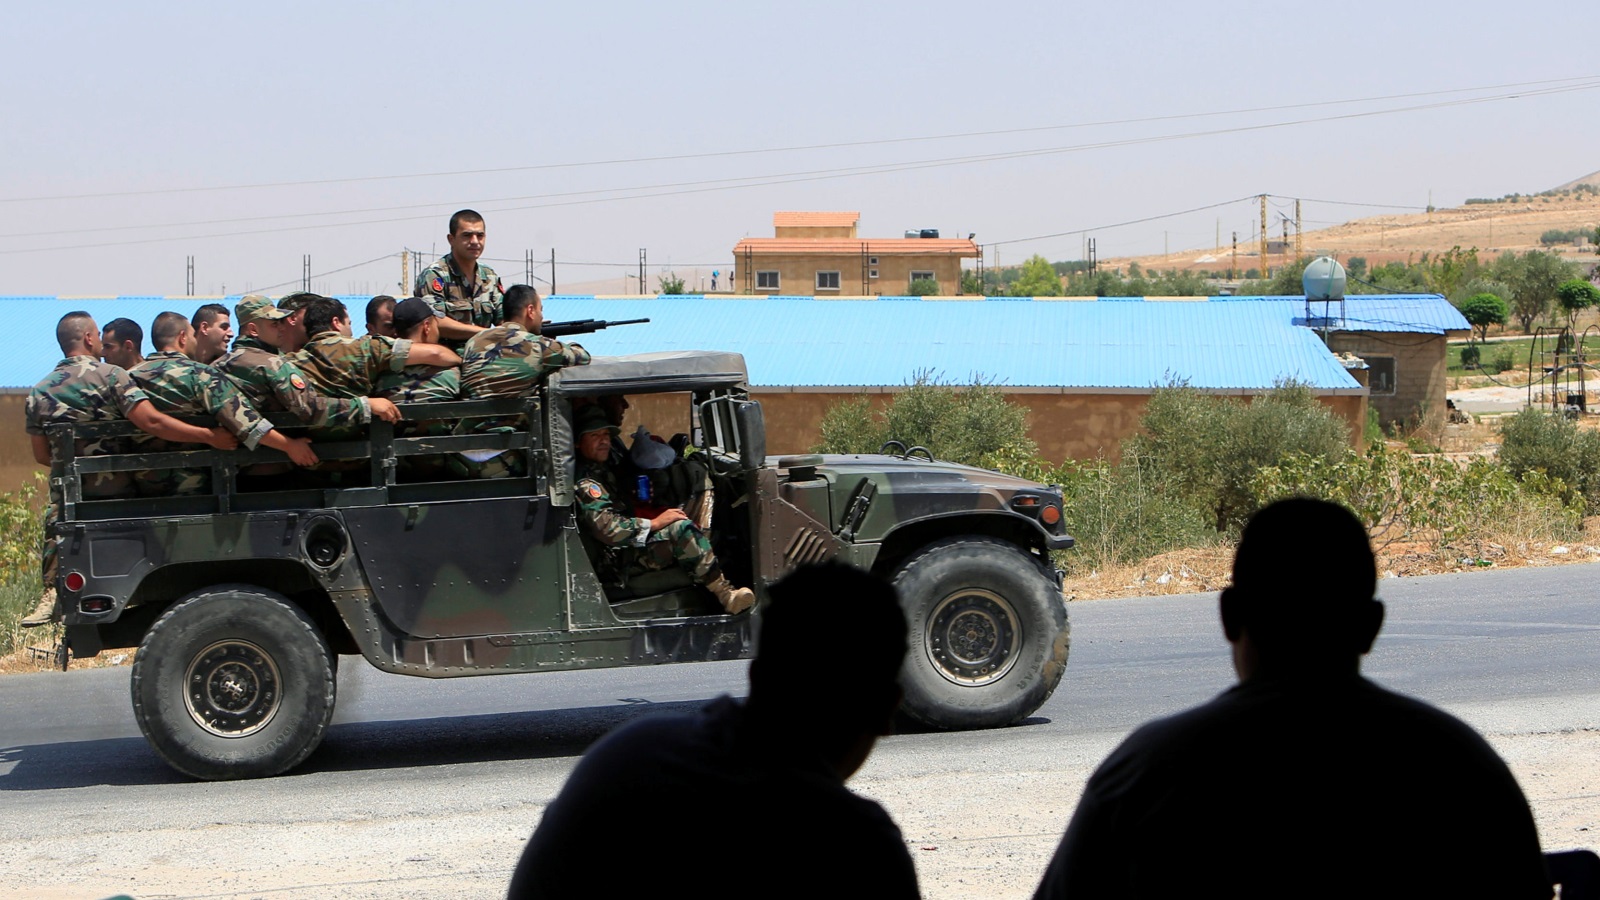 ‪دورية للجيش اللبناني بأحد شوارع بلدة لبوة المحاذية لبلدة عرسال الحدودية مع سوريا‬ (رويترز)